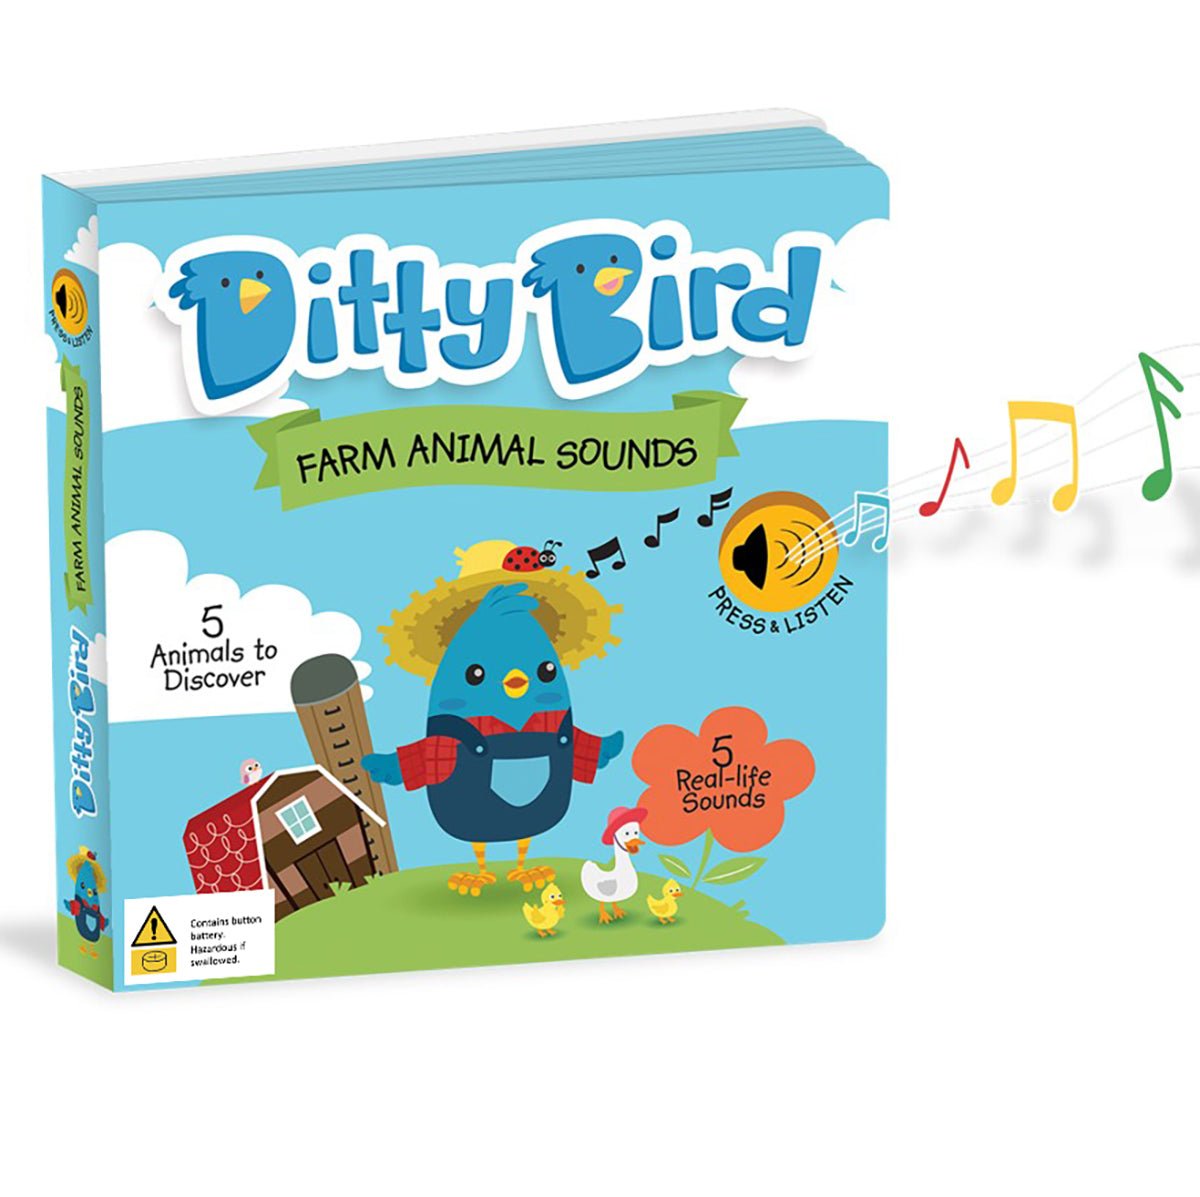 Ditty Bird Farm Animal Sounds Book | Ditty Bird